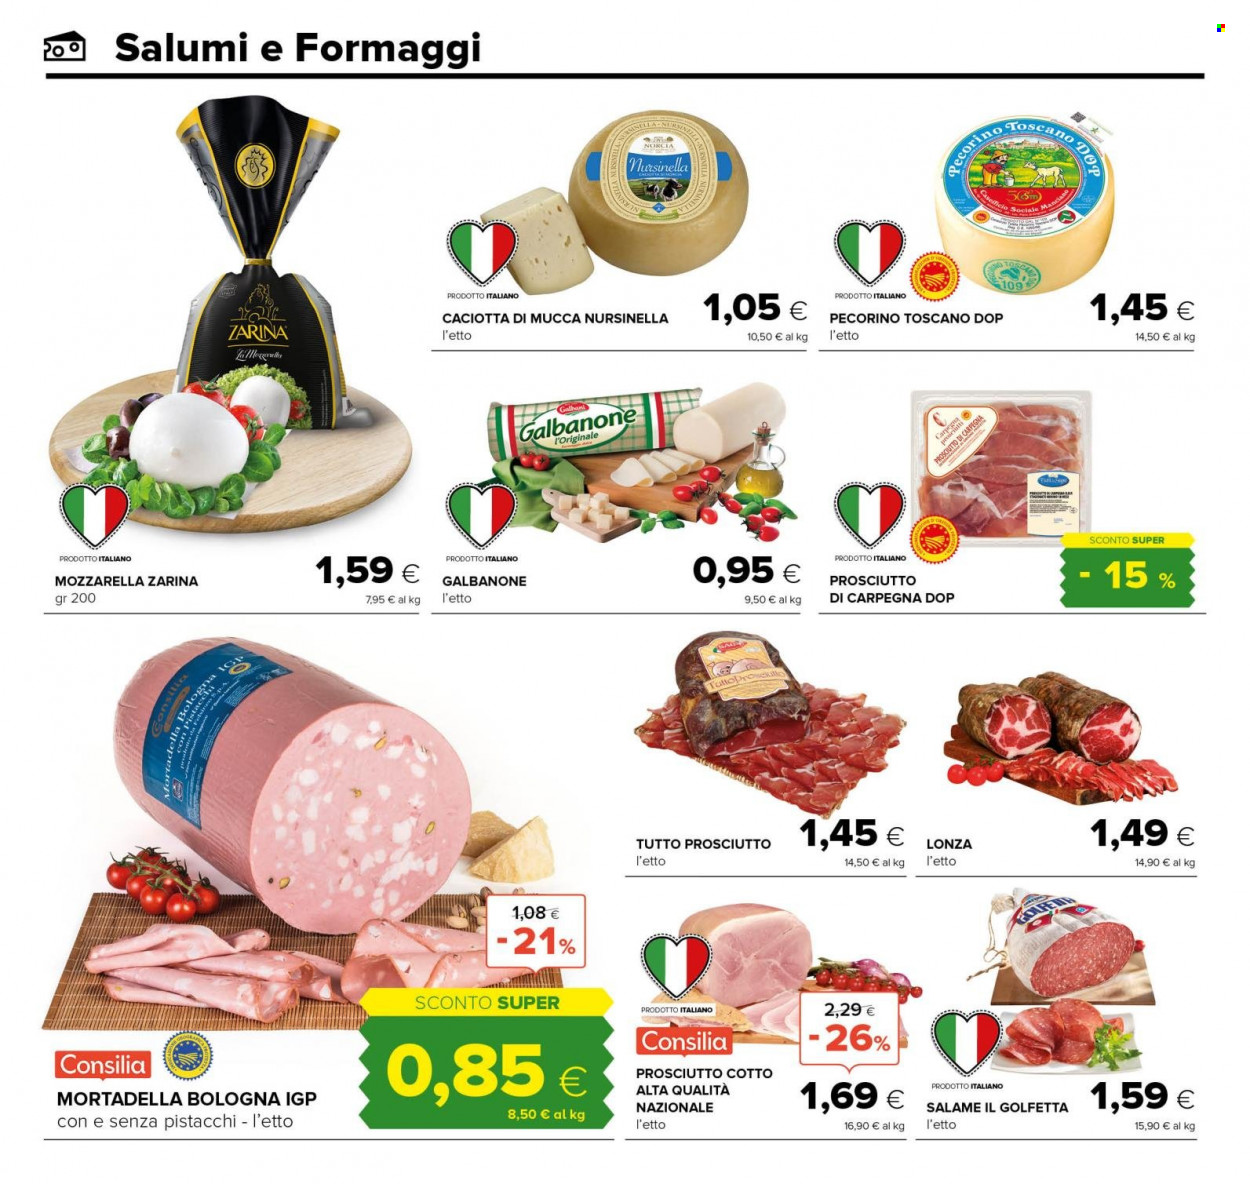 thumbnail - Volantino Oasi - 18/5/2022 - 31/5/2022 - Prodotti in offerta - prosciutto, salame, prosciutto cotto, mortadella, formaggio, mozzarella, caciotta, pecorino, Galbanone, Pecorino Toscano. Pagina 10.